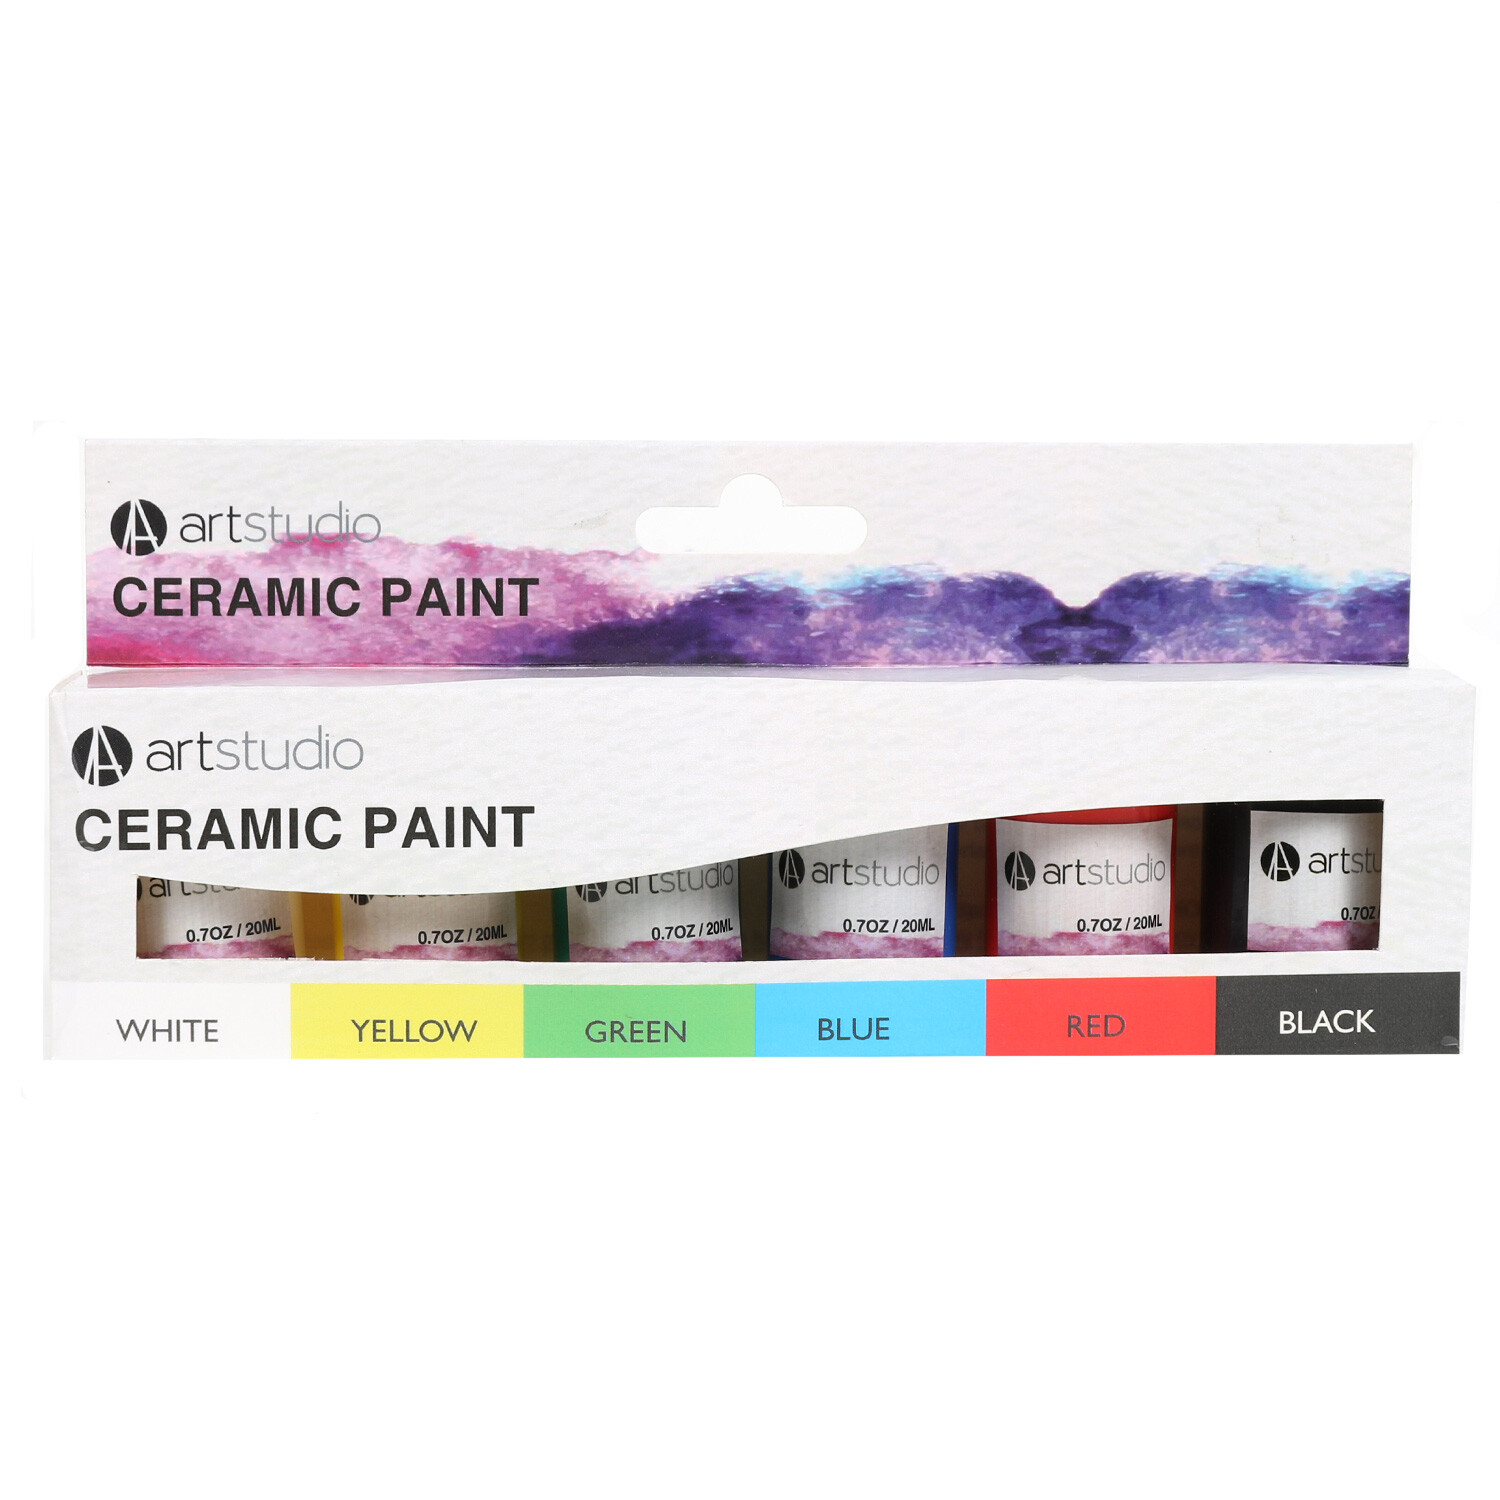 Art Studio Ceramic Paint 20ml 6 Pack Image